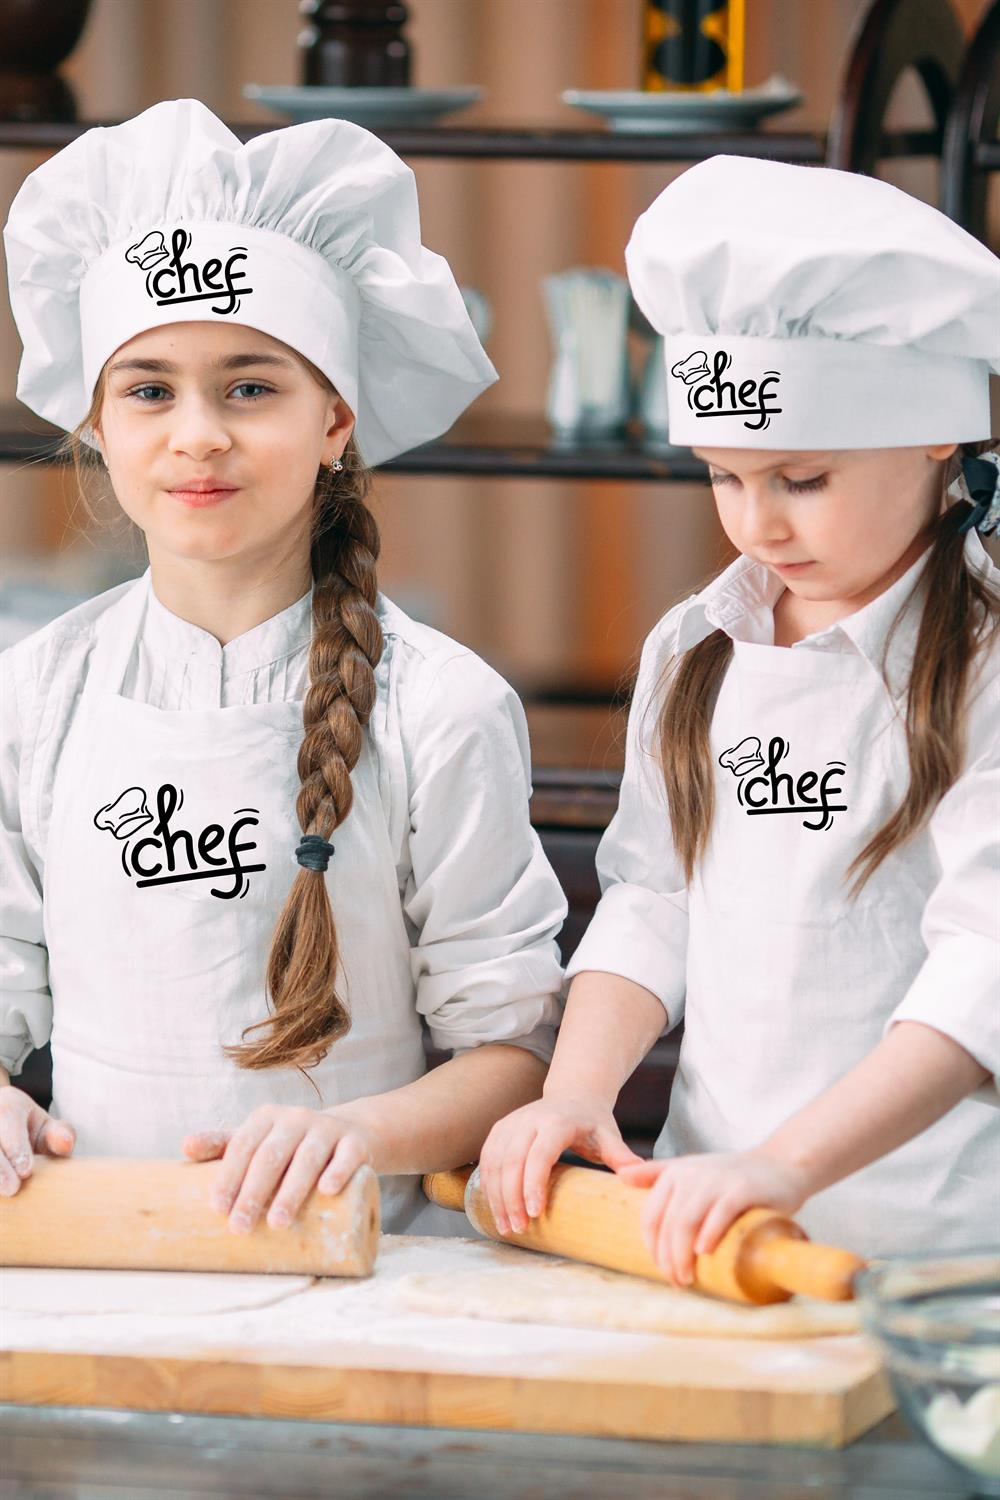 Chef Baskılı Çocuk Beyaz Mutfak Önlüğü Ve Çocuk Aşçı (şef) Şapkası 2'li Set